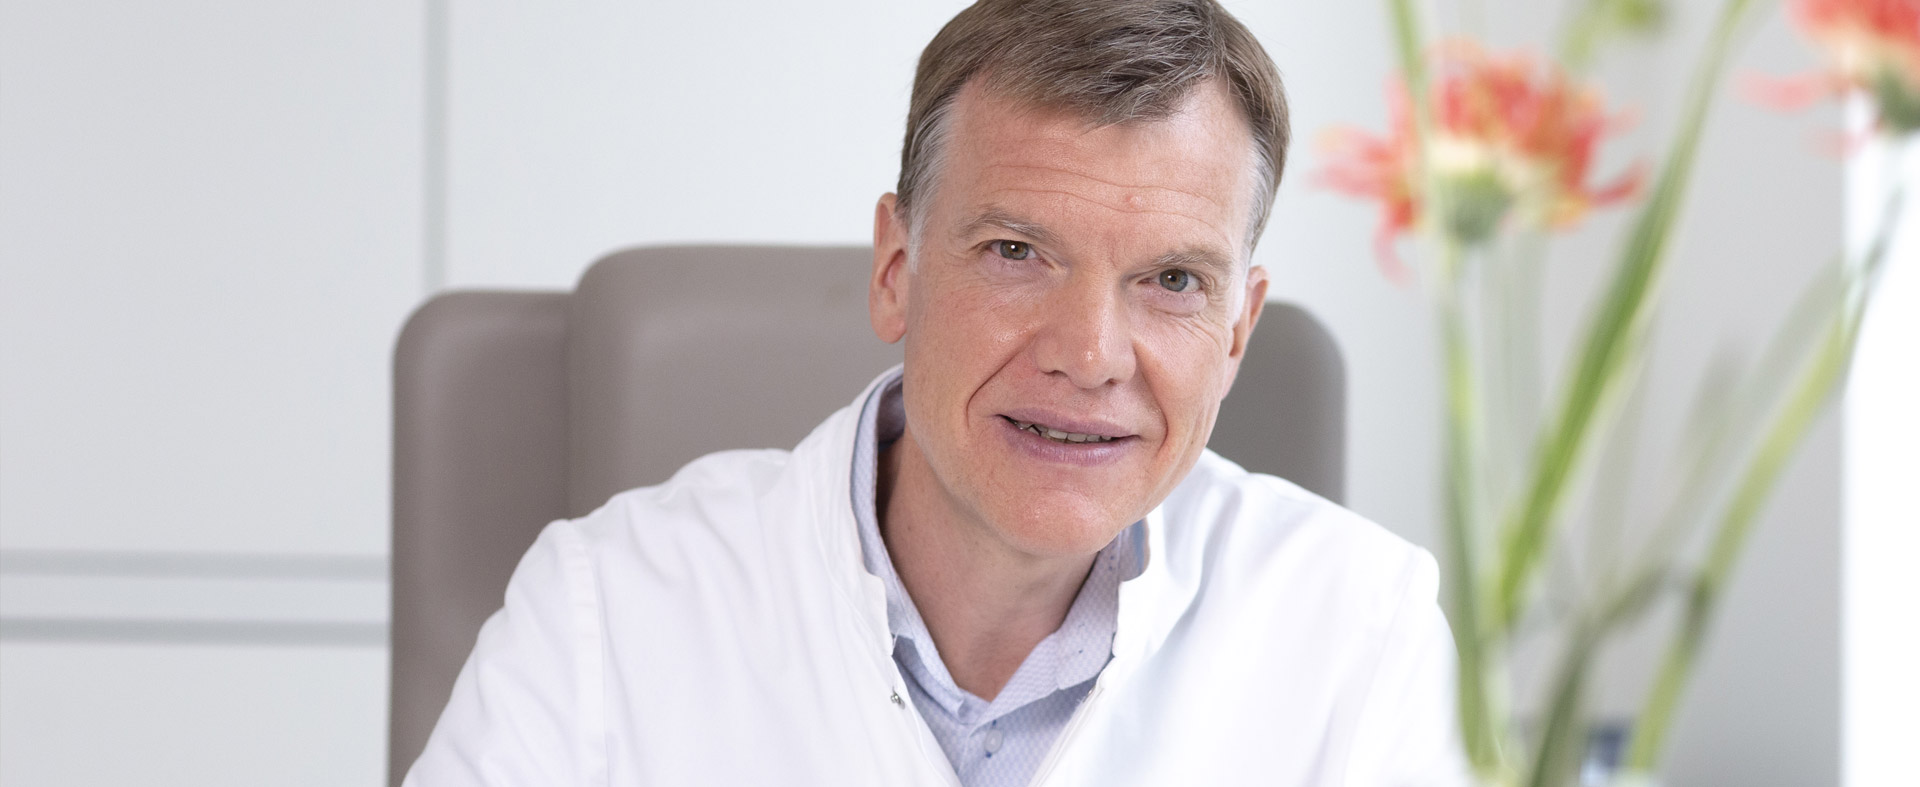 Bauchspeicheldrüse Experte Wien Chirurg Dr. Martin Schindl